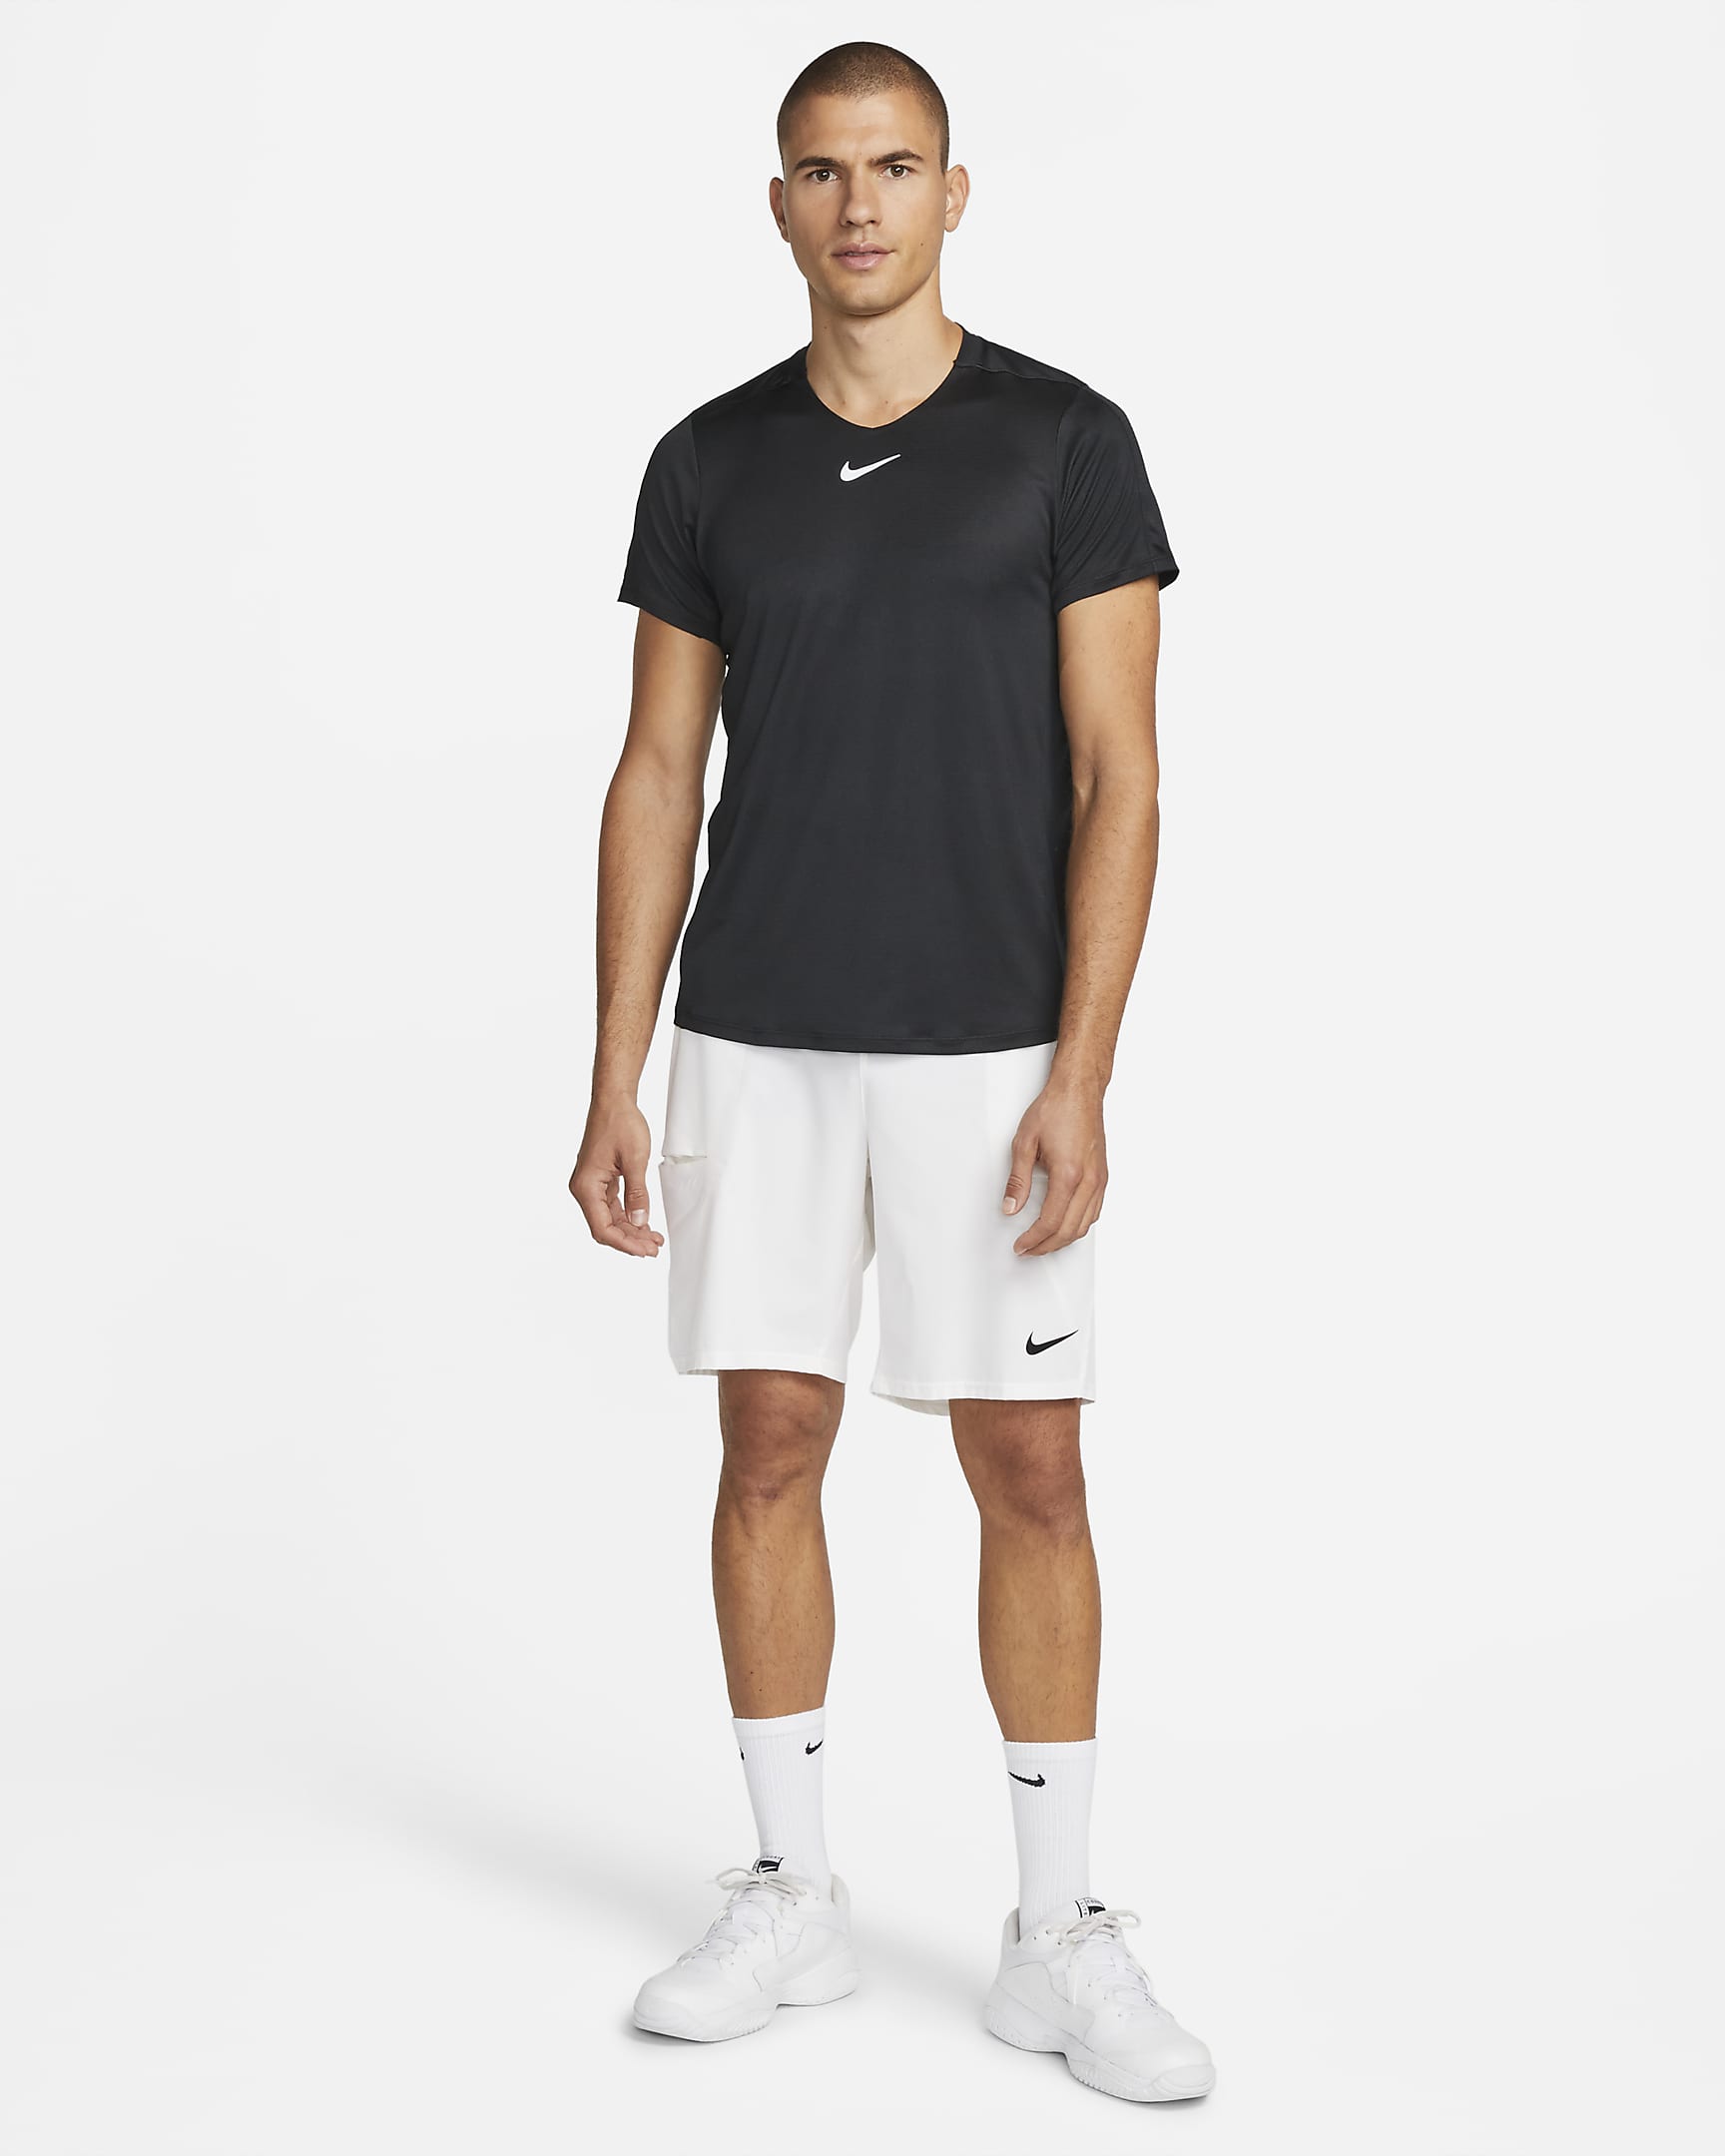 NikeCourt Dri-FIT Advantage Men's Tennis Top. Nike PH